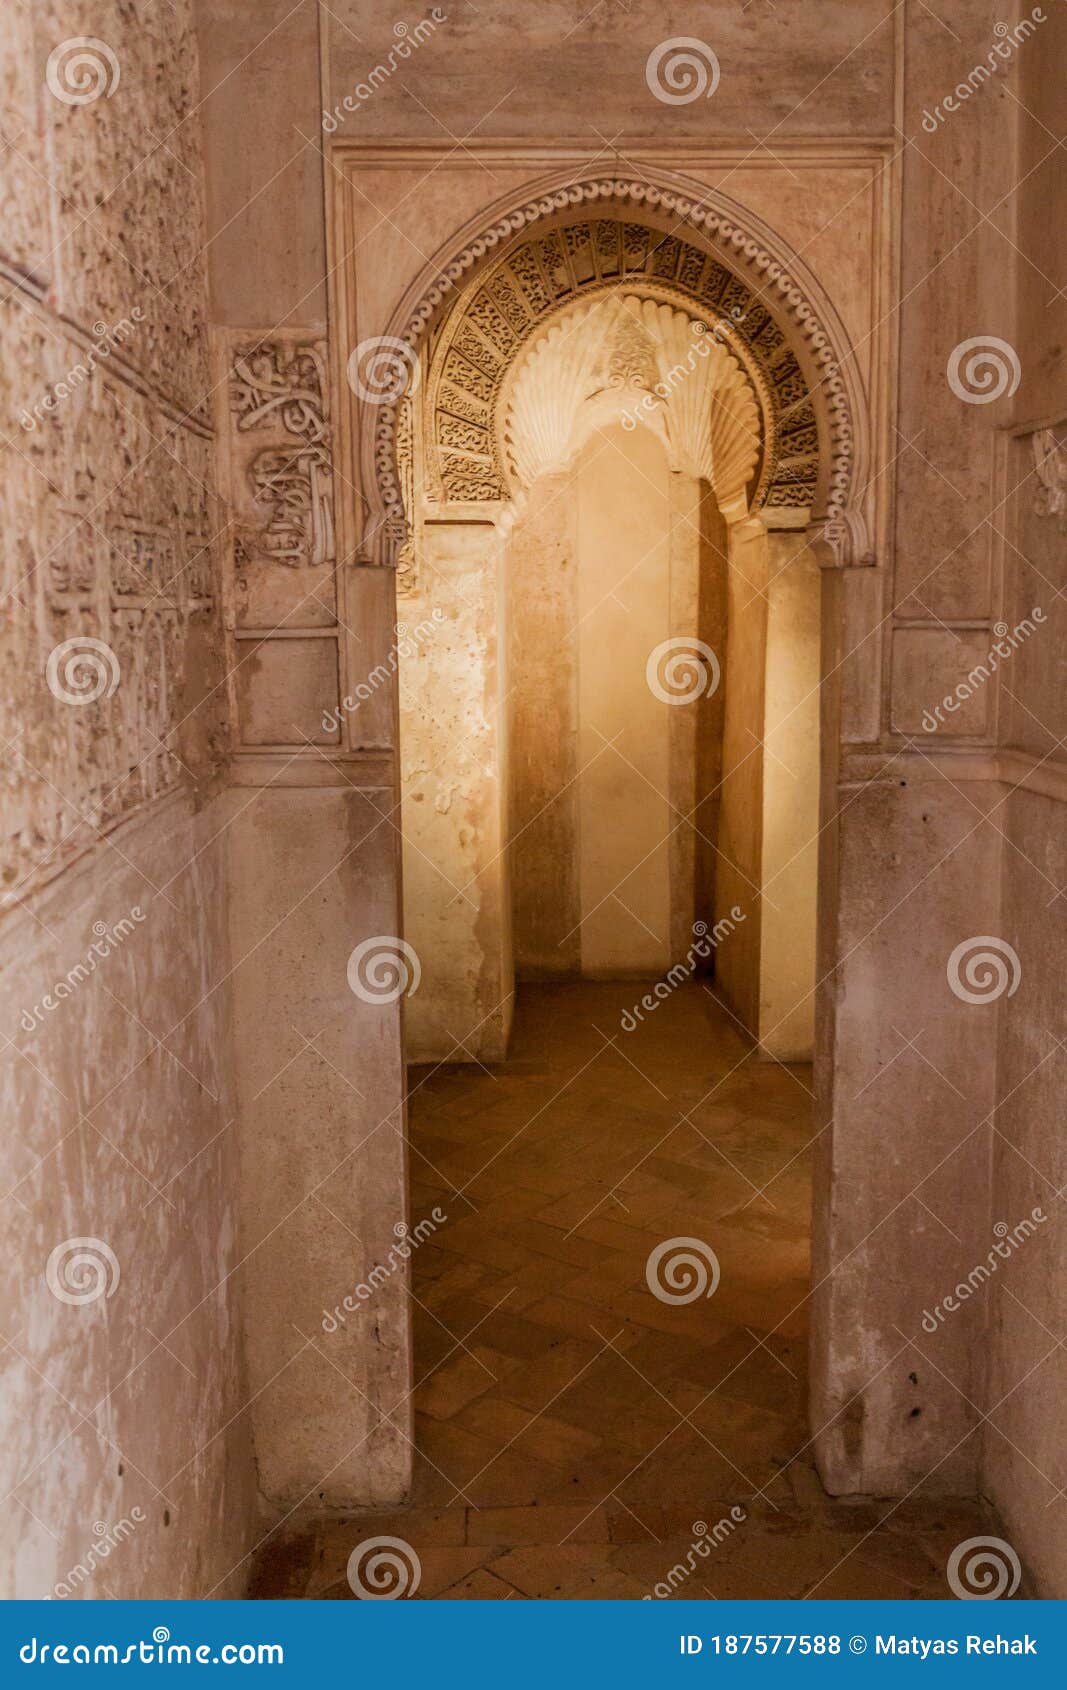 granada, spain - november 2, 2017: rooms in nasrid palaces (palacios nazaries) at alhambra in granada, spa